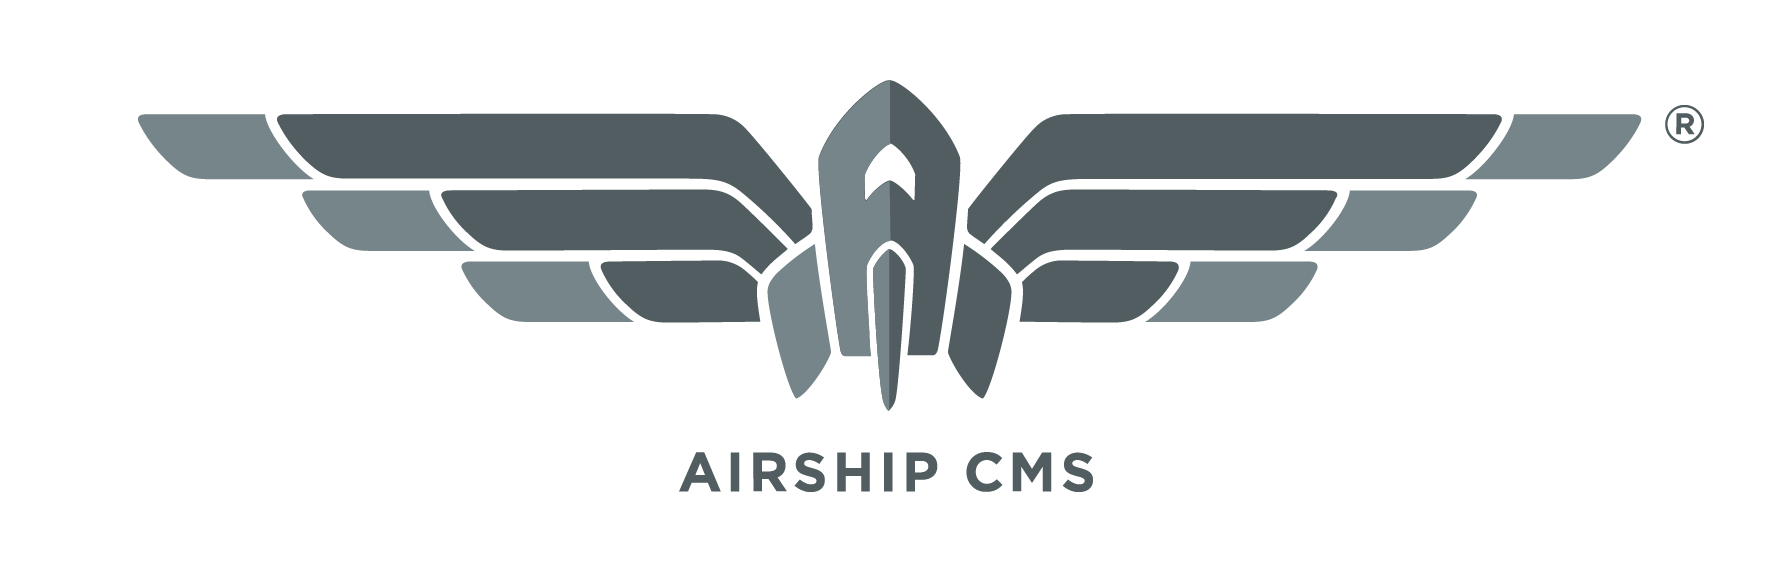 Airship CMS Logo